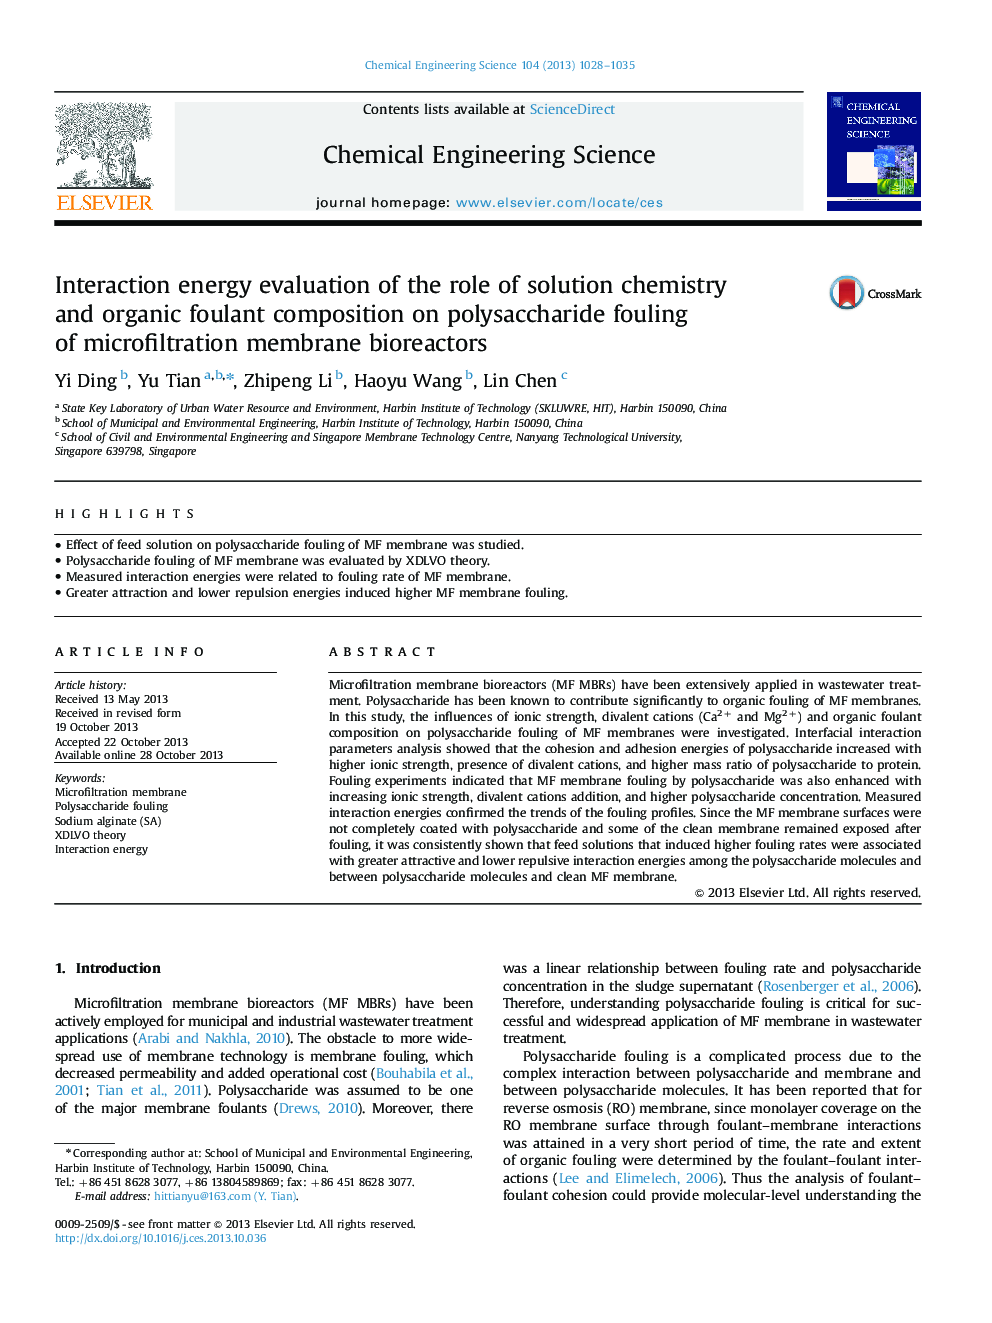 ارزیابی انرژی تعامل با نقش شیمیائی محلول و ترکیب فسفات آلی روی ضایعات پلی ساکارید بیوراکتورهای غشایی میکروفیلتراسیون 